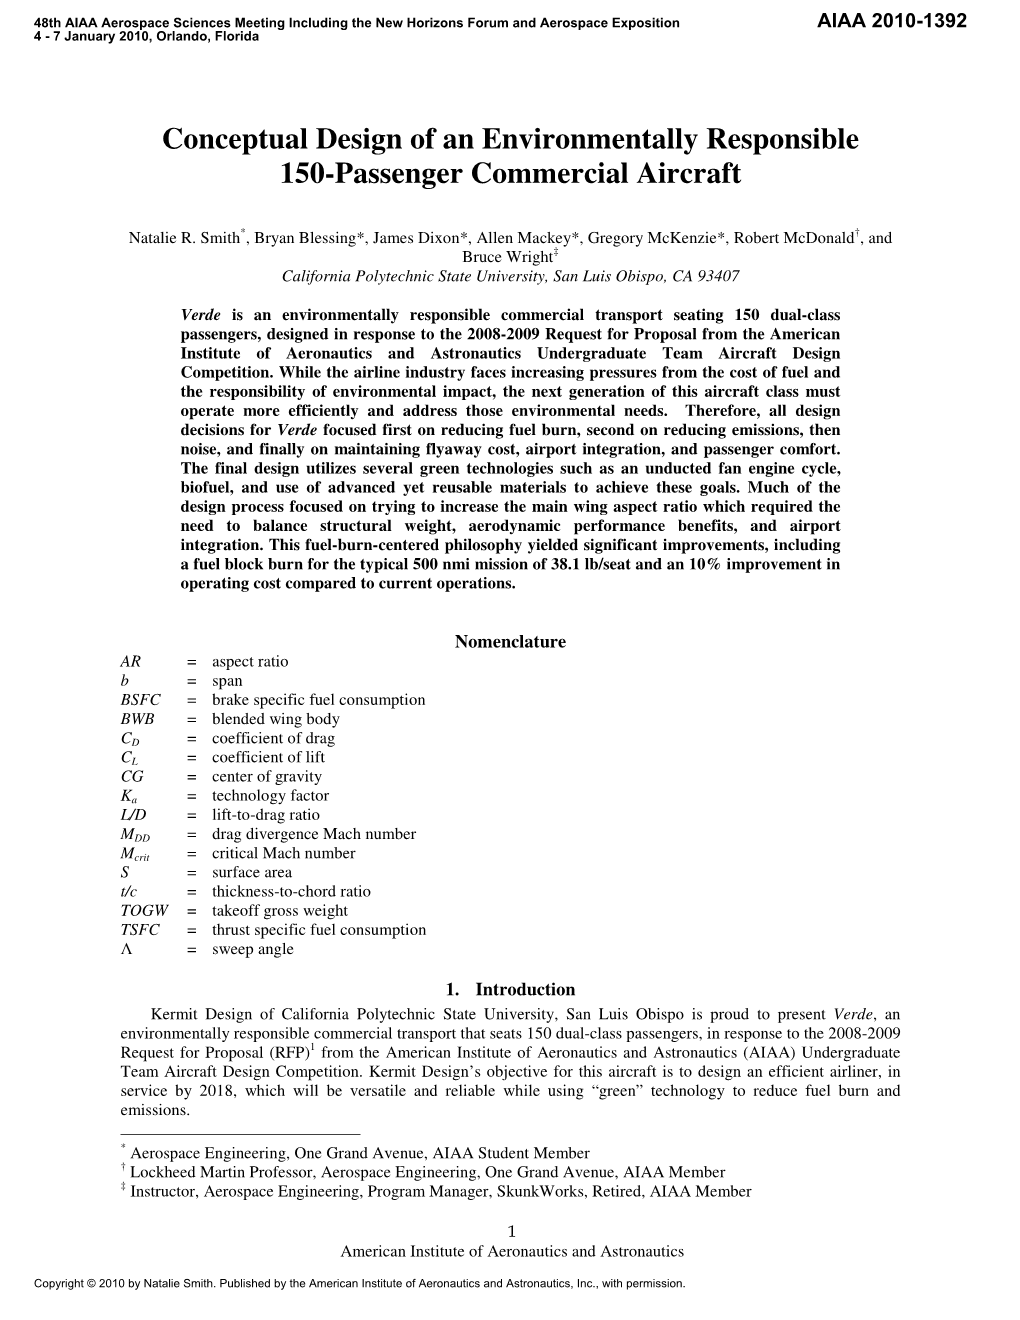 Conceptual Design of an Environmentally Responsible 150-Passenger Commercial Aircraft